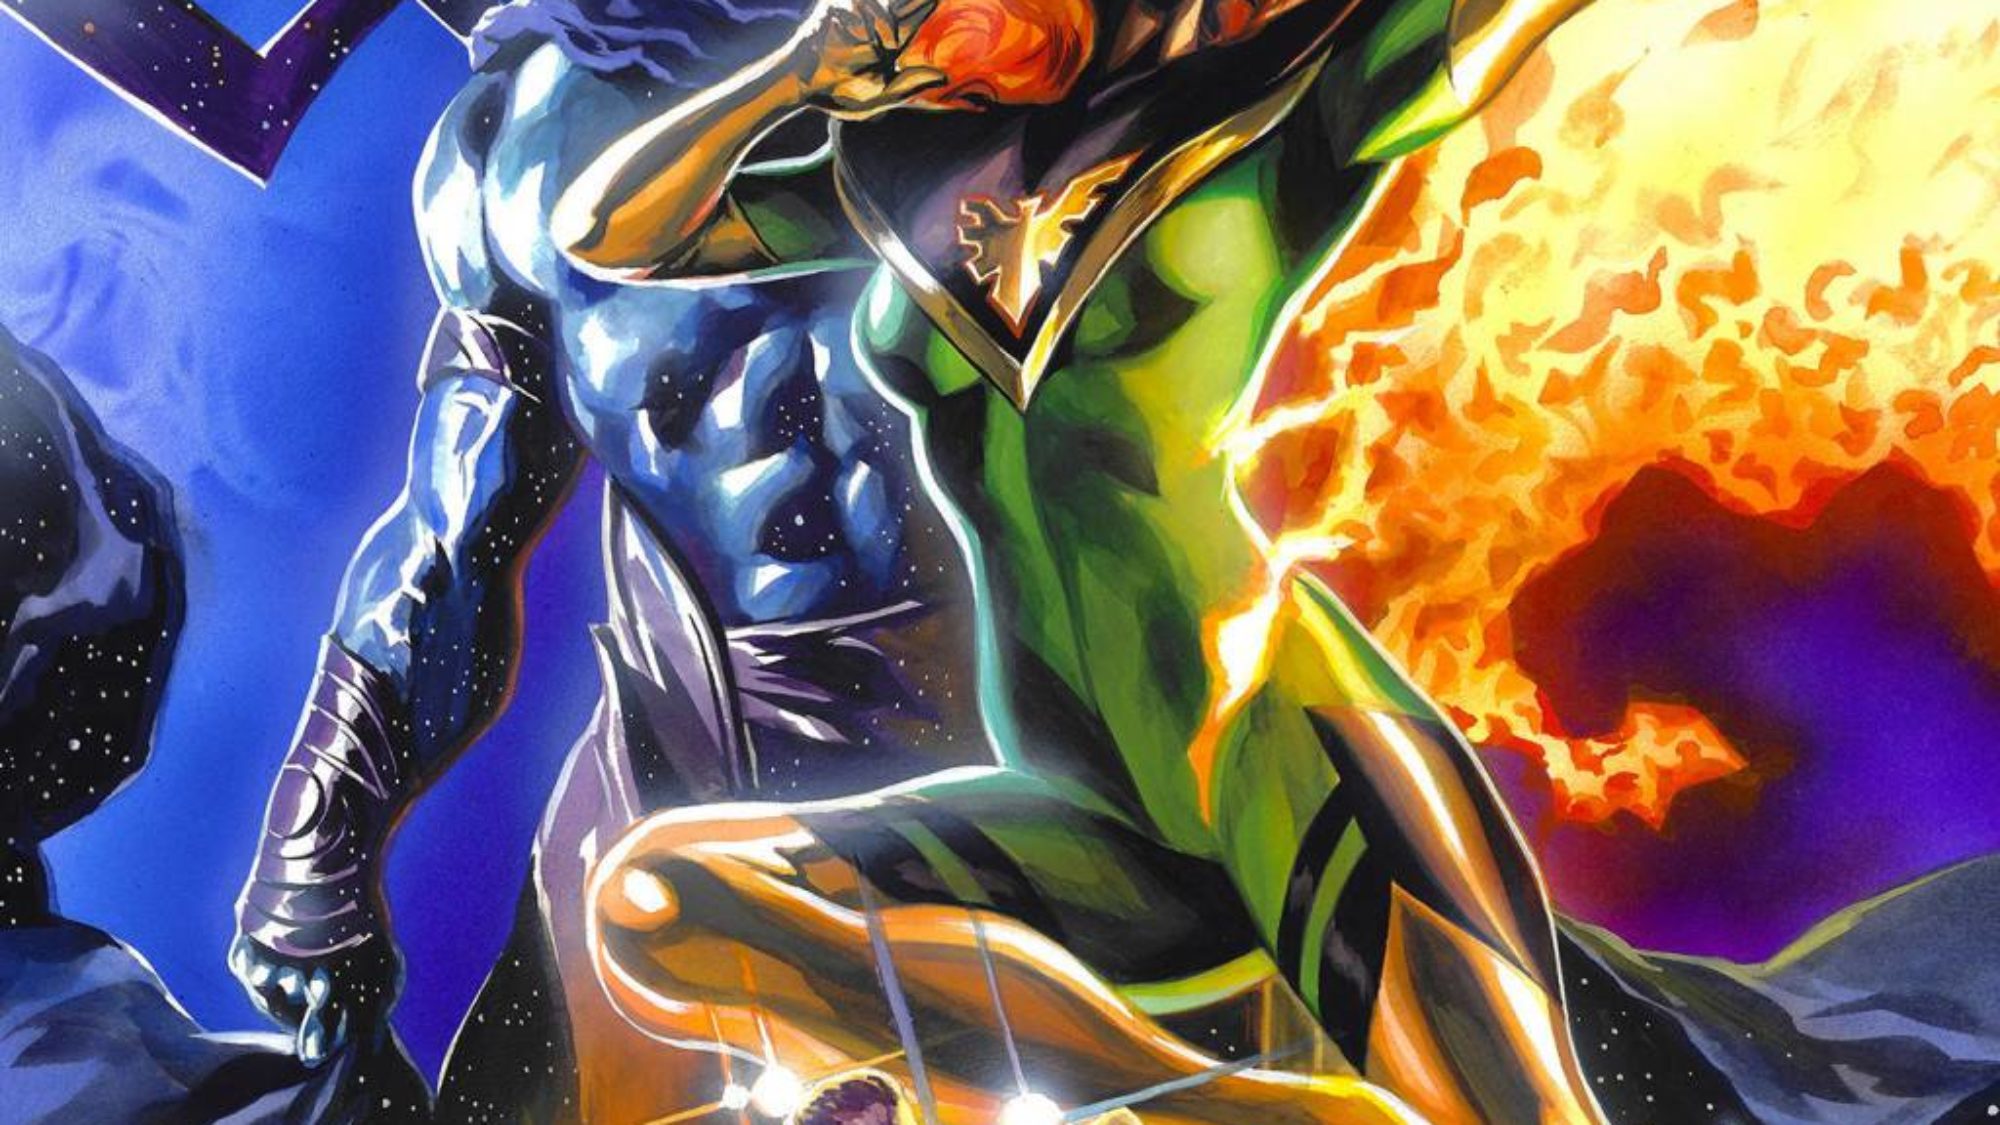 Tomowi Brevoortowi nakazano przenieść X-Men z Kakao w związku z obawami związanymi ze studiem